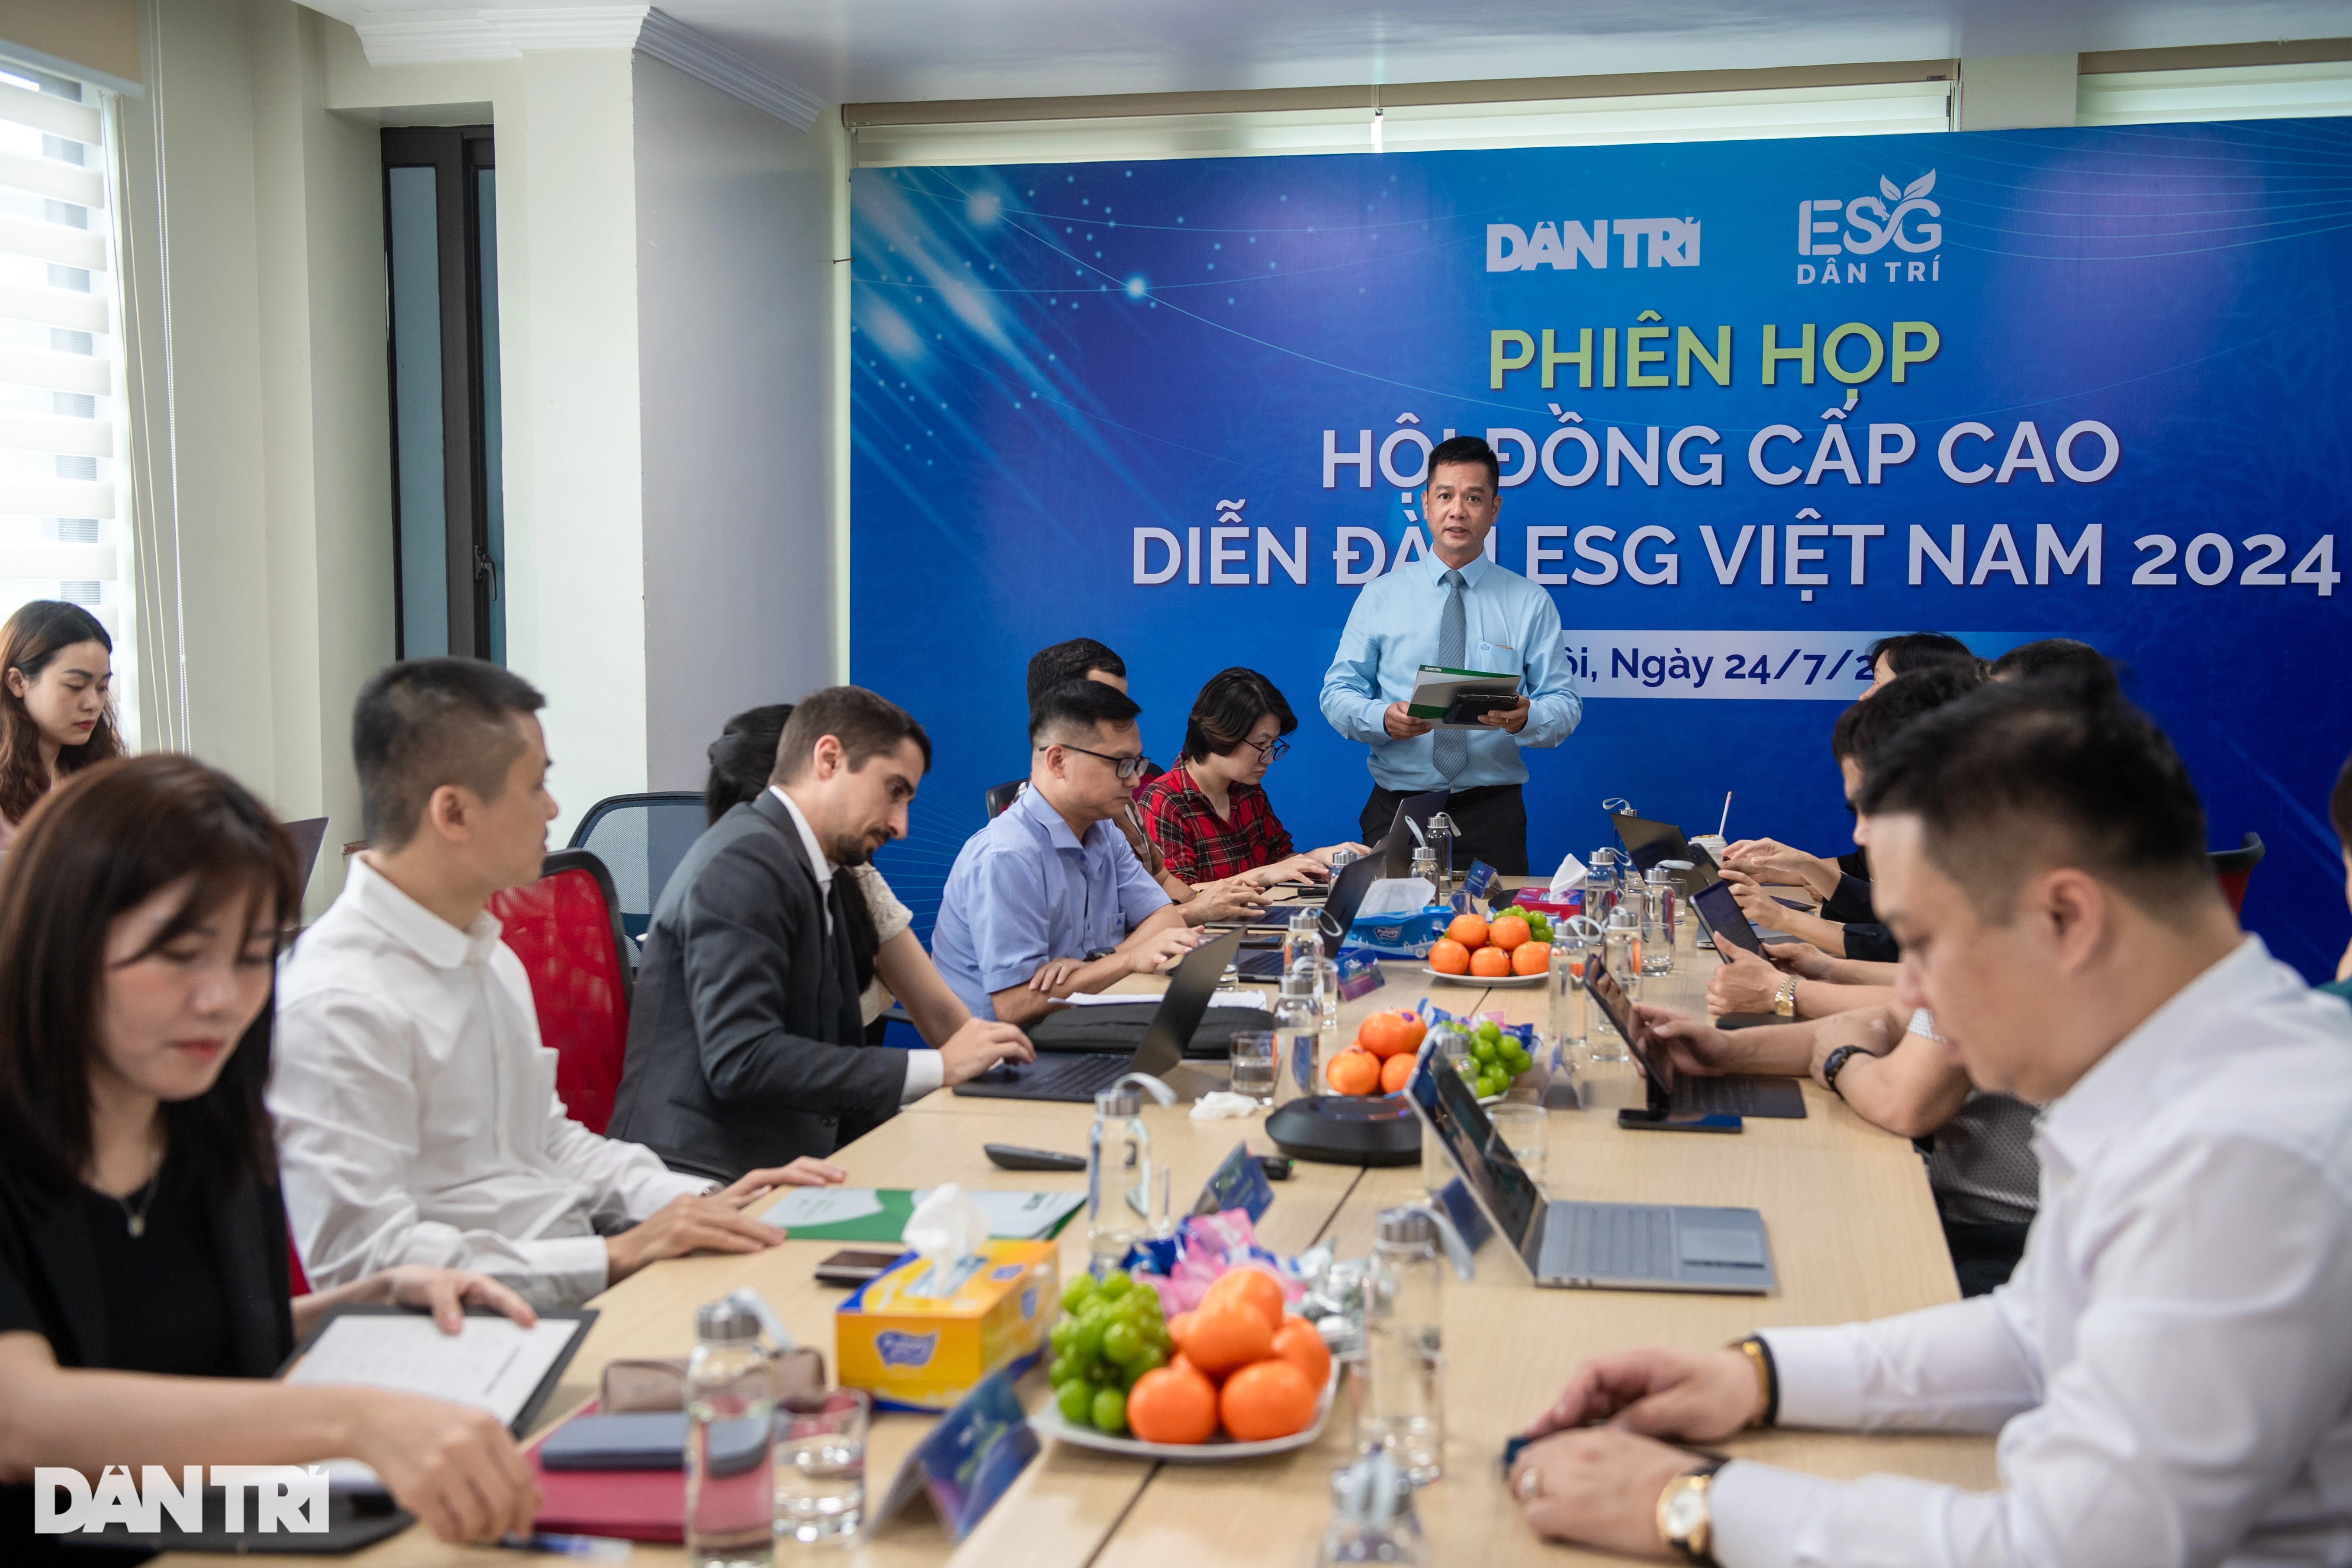 Hội đồng cấp cao: Diễn đàn ESG Việt Nam cần được tổ chức thường niên